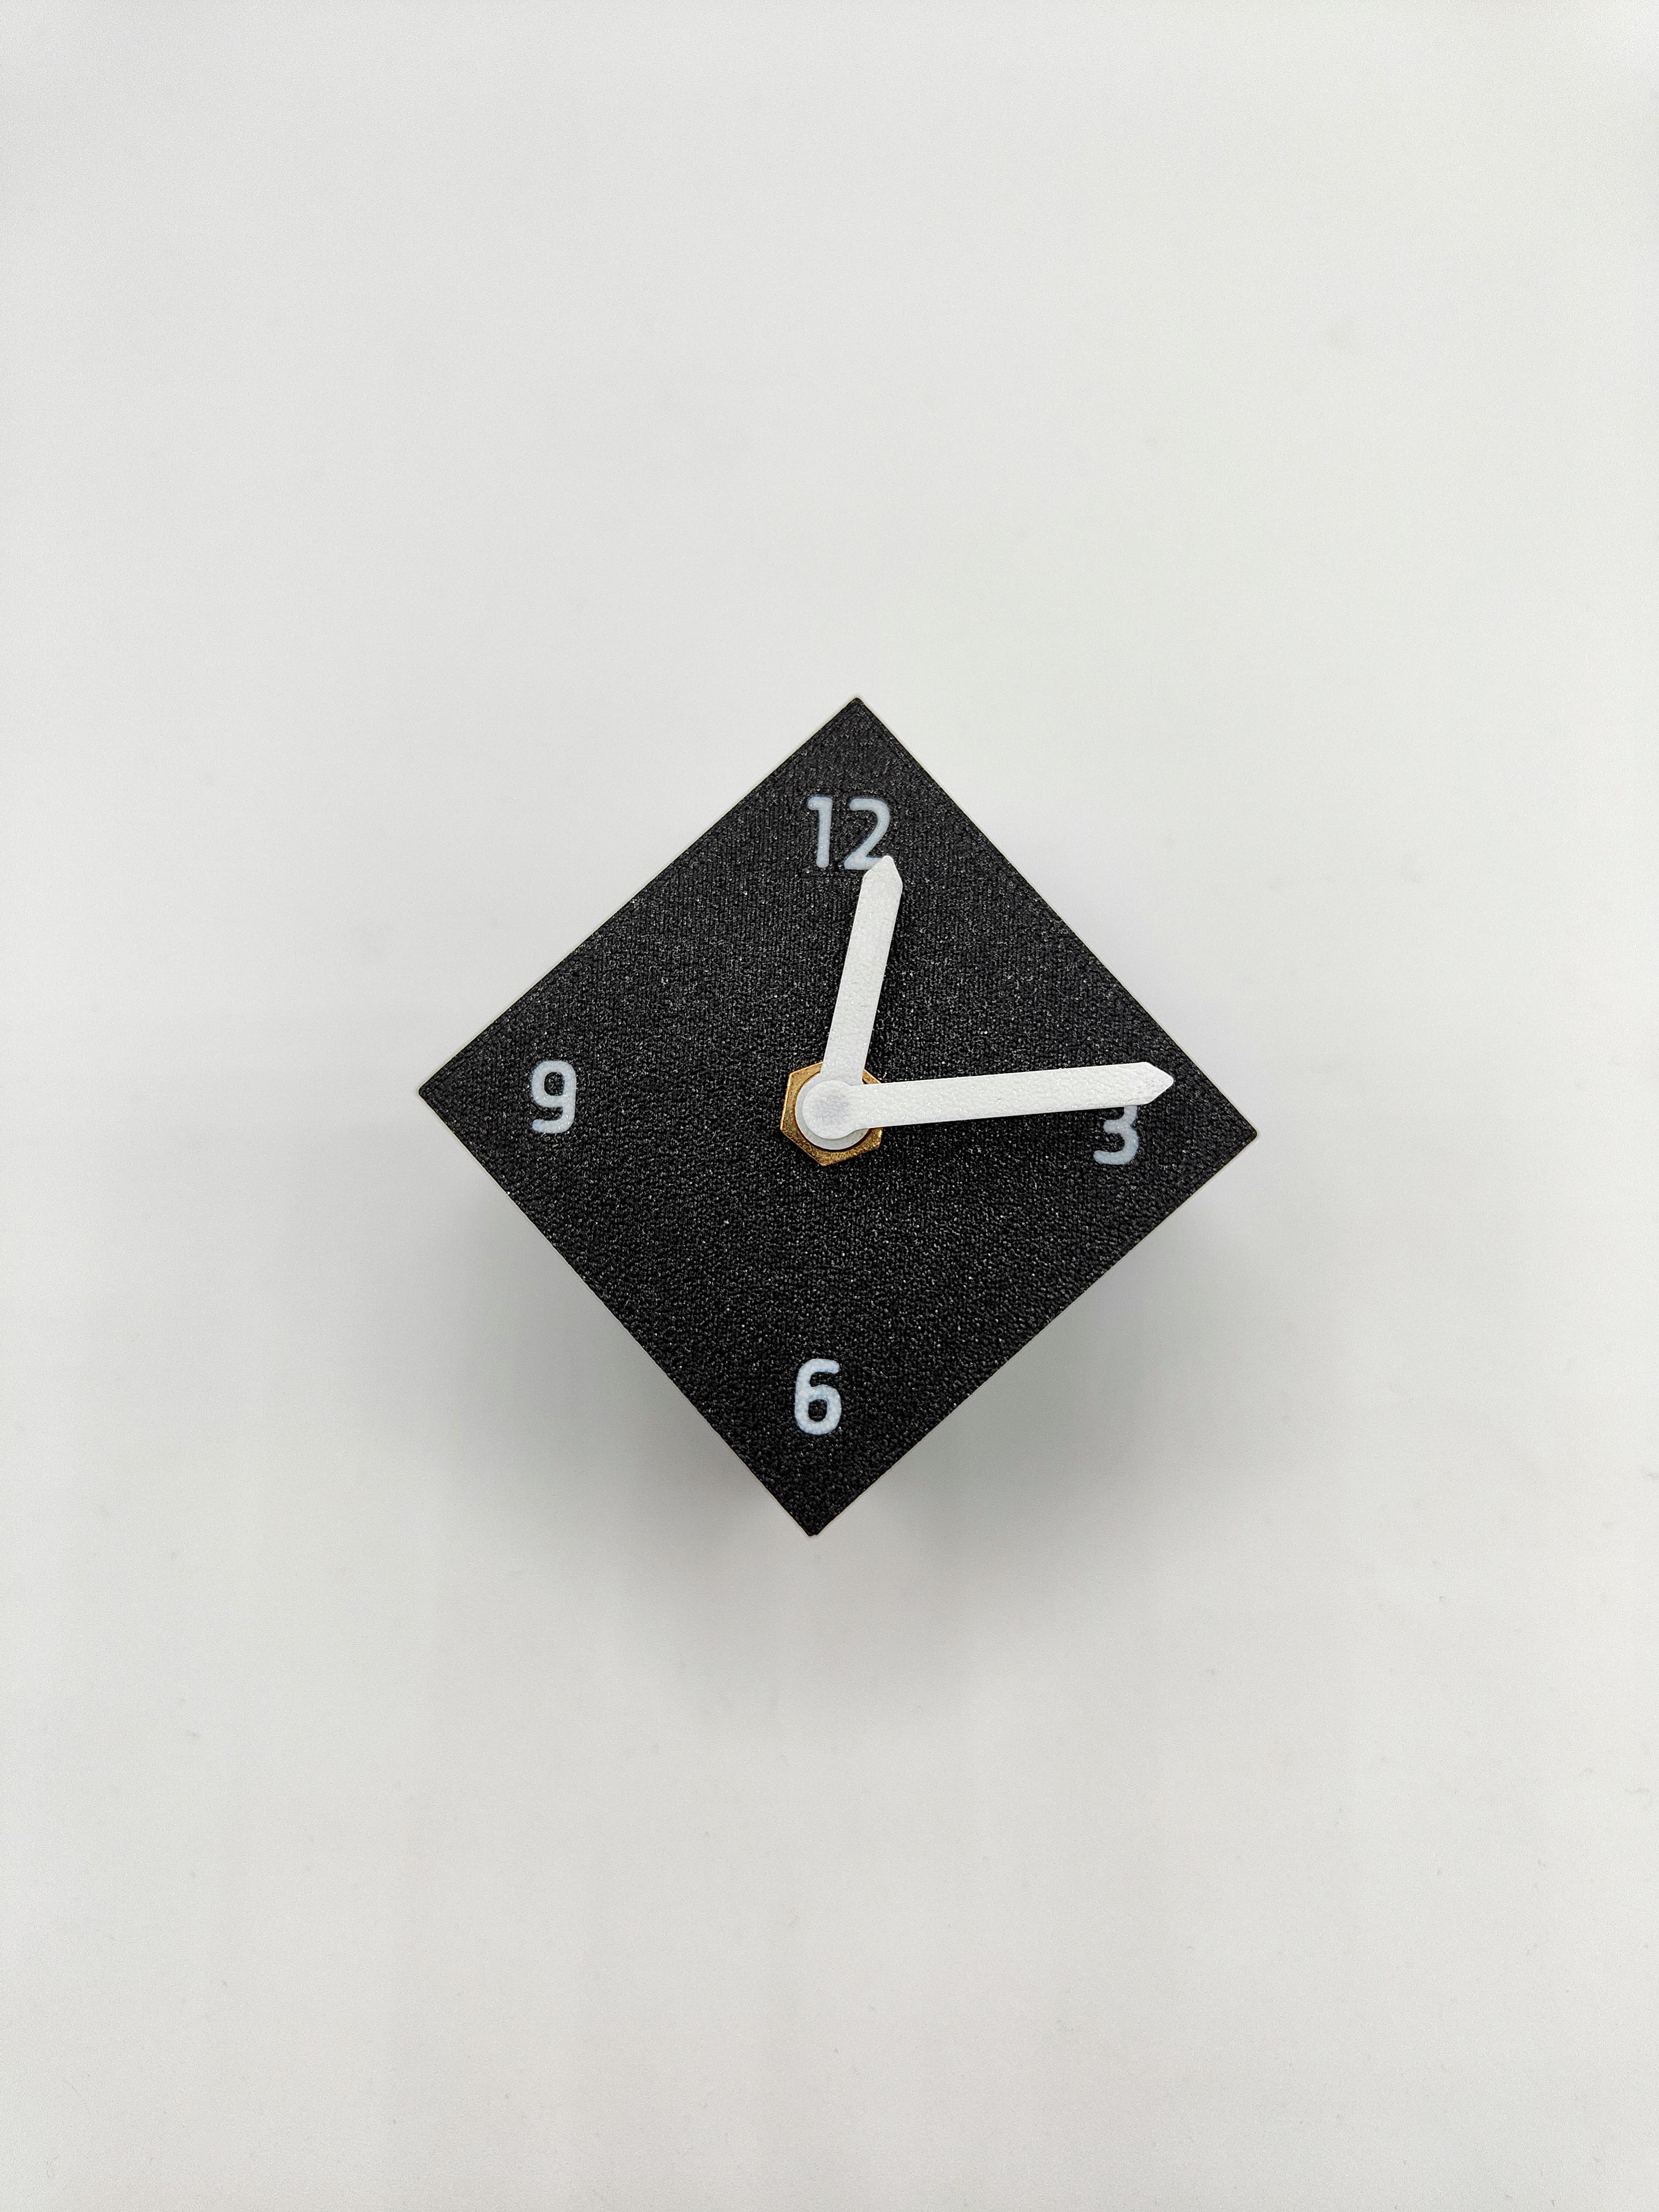 Qbe Clock 3d model